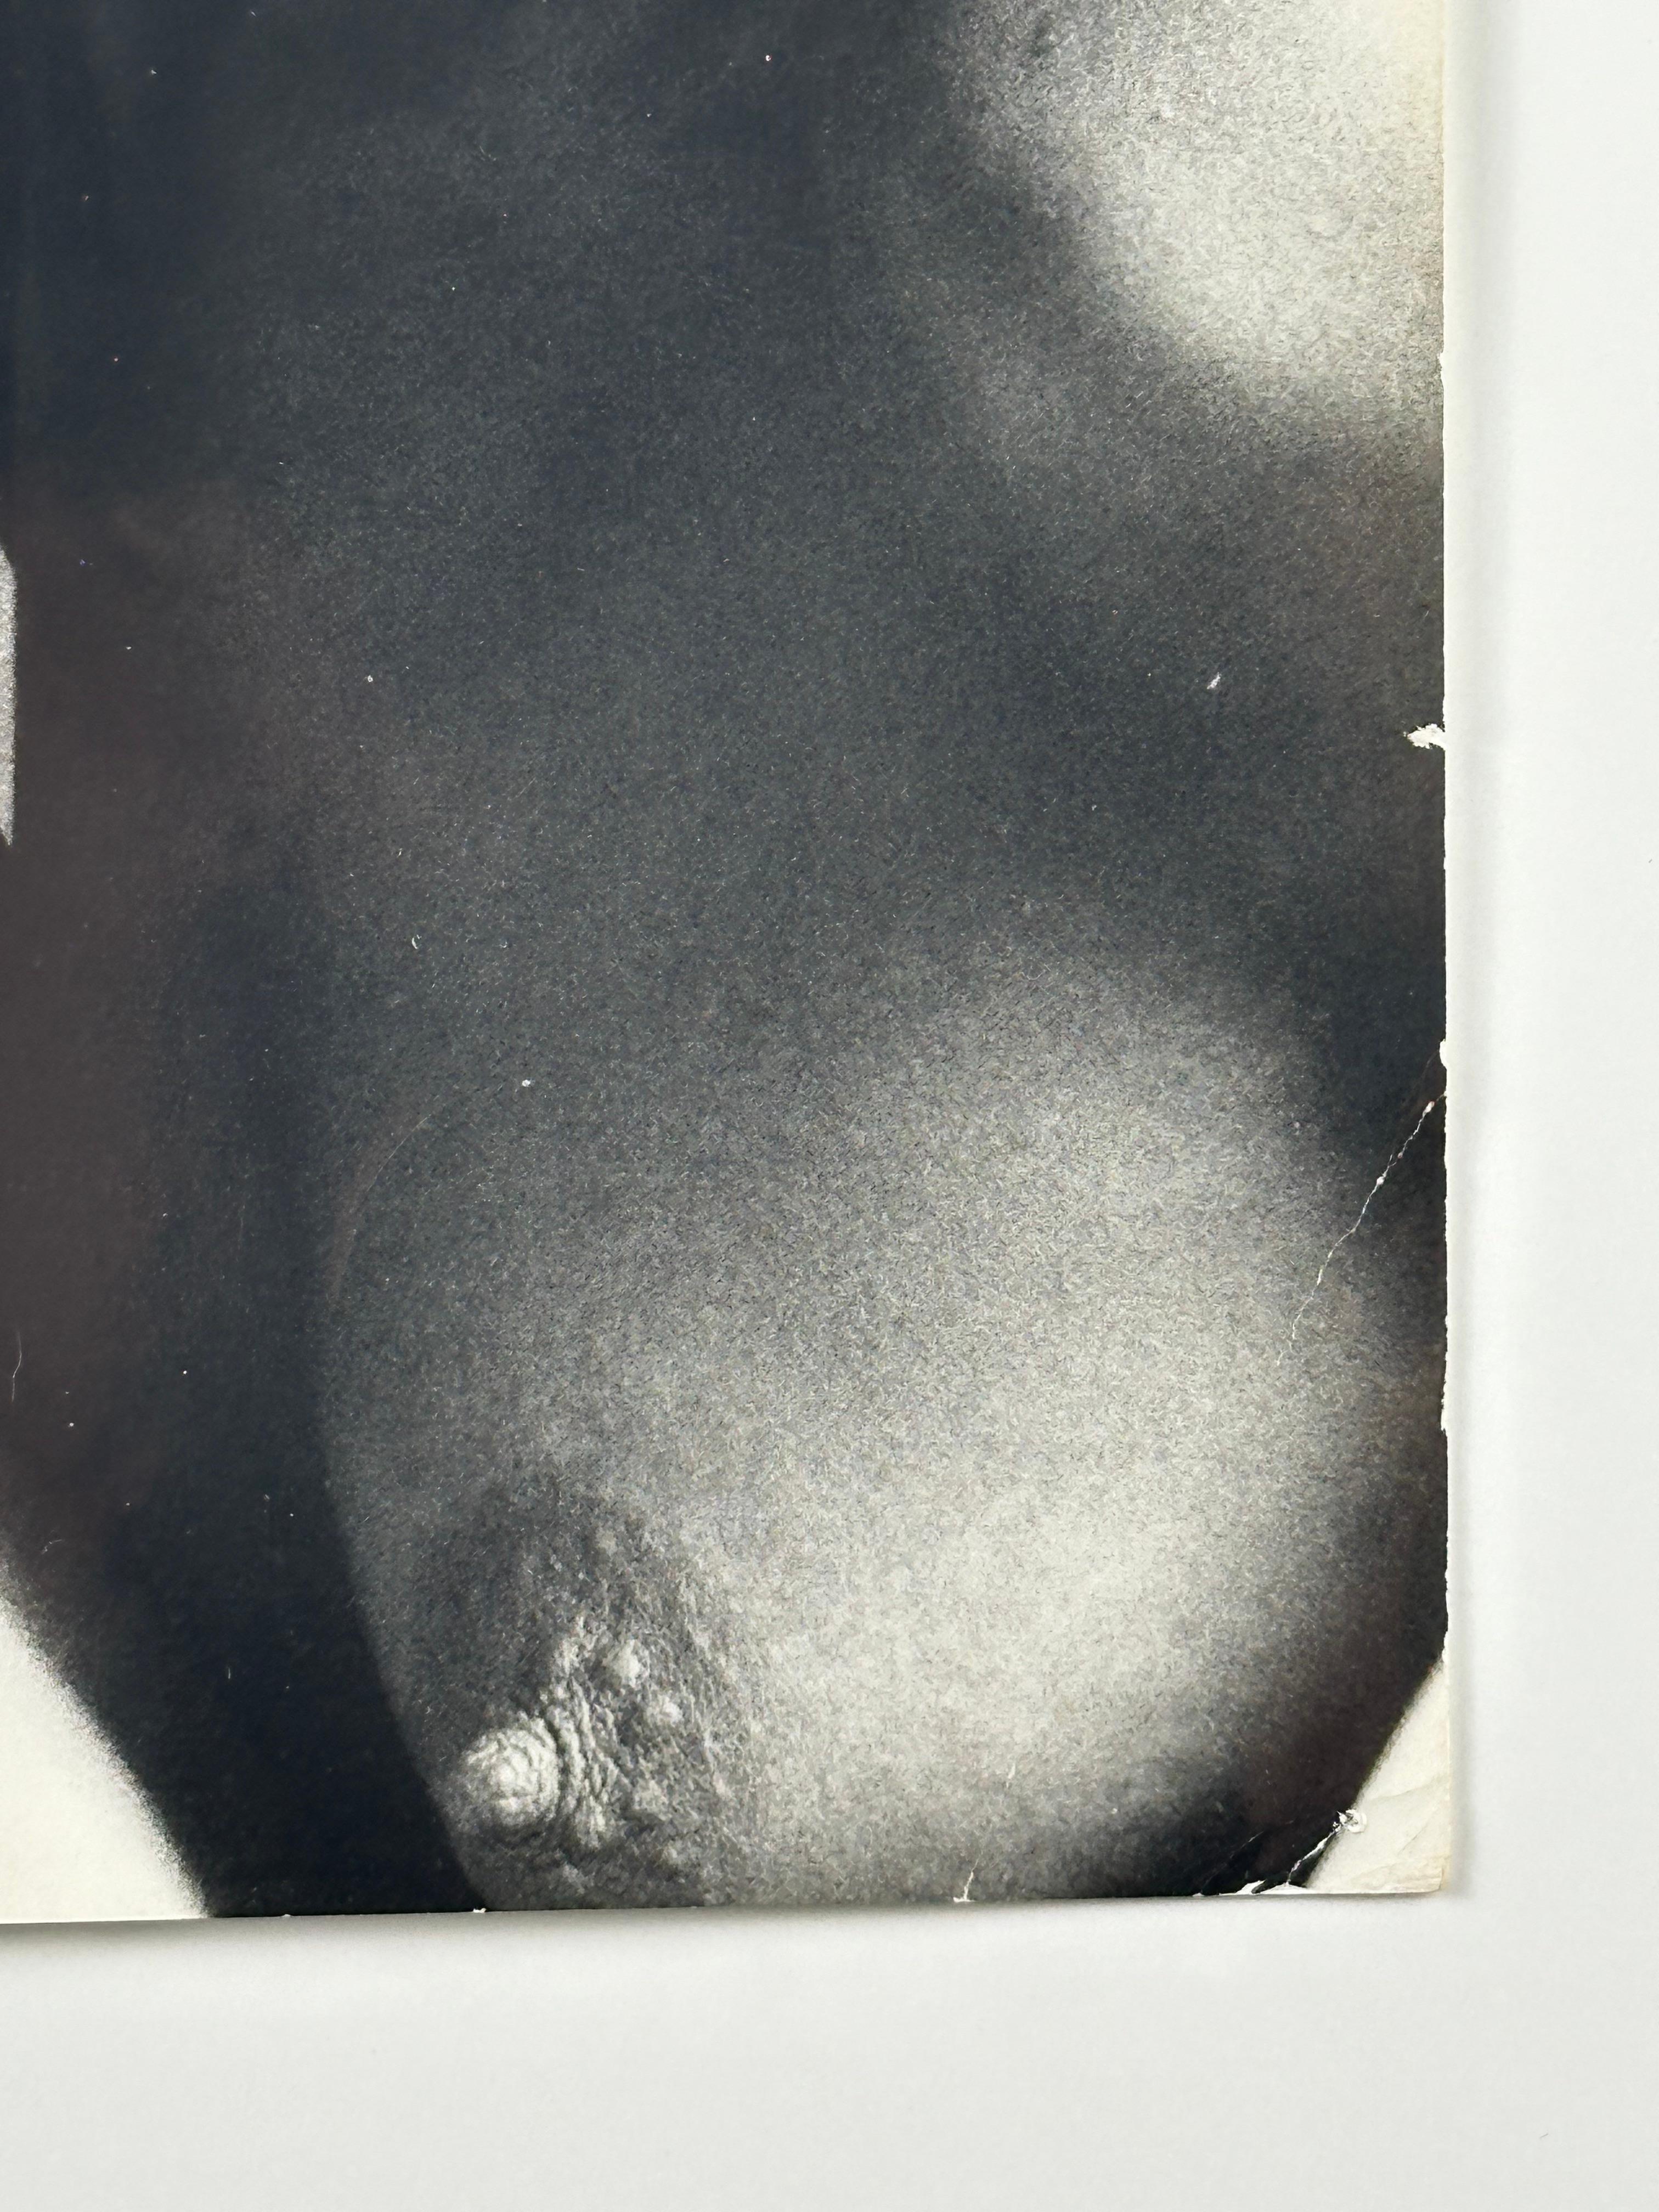 Victor Arimondi (1942-2001). Porträt von Grace Jones, 1975. Period print misst 8 x 11,75 Zoll; 10,25 x 13 Zoll gerahmt. Verso Stempel des Künstlerstudios. Einige Knicke in den Ecken, Nadellöcher, leichte Verschmutzung. 

Dieses einzigartige Exemplar